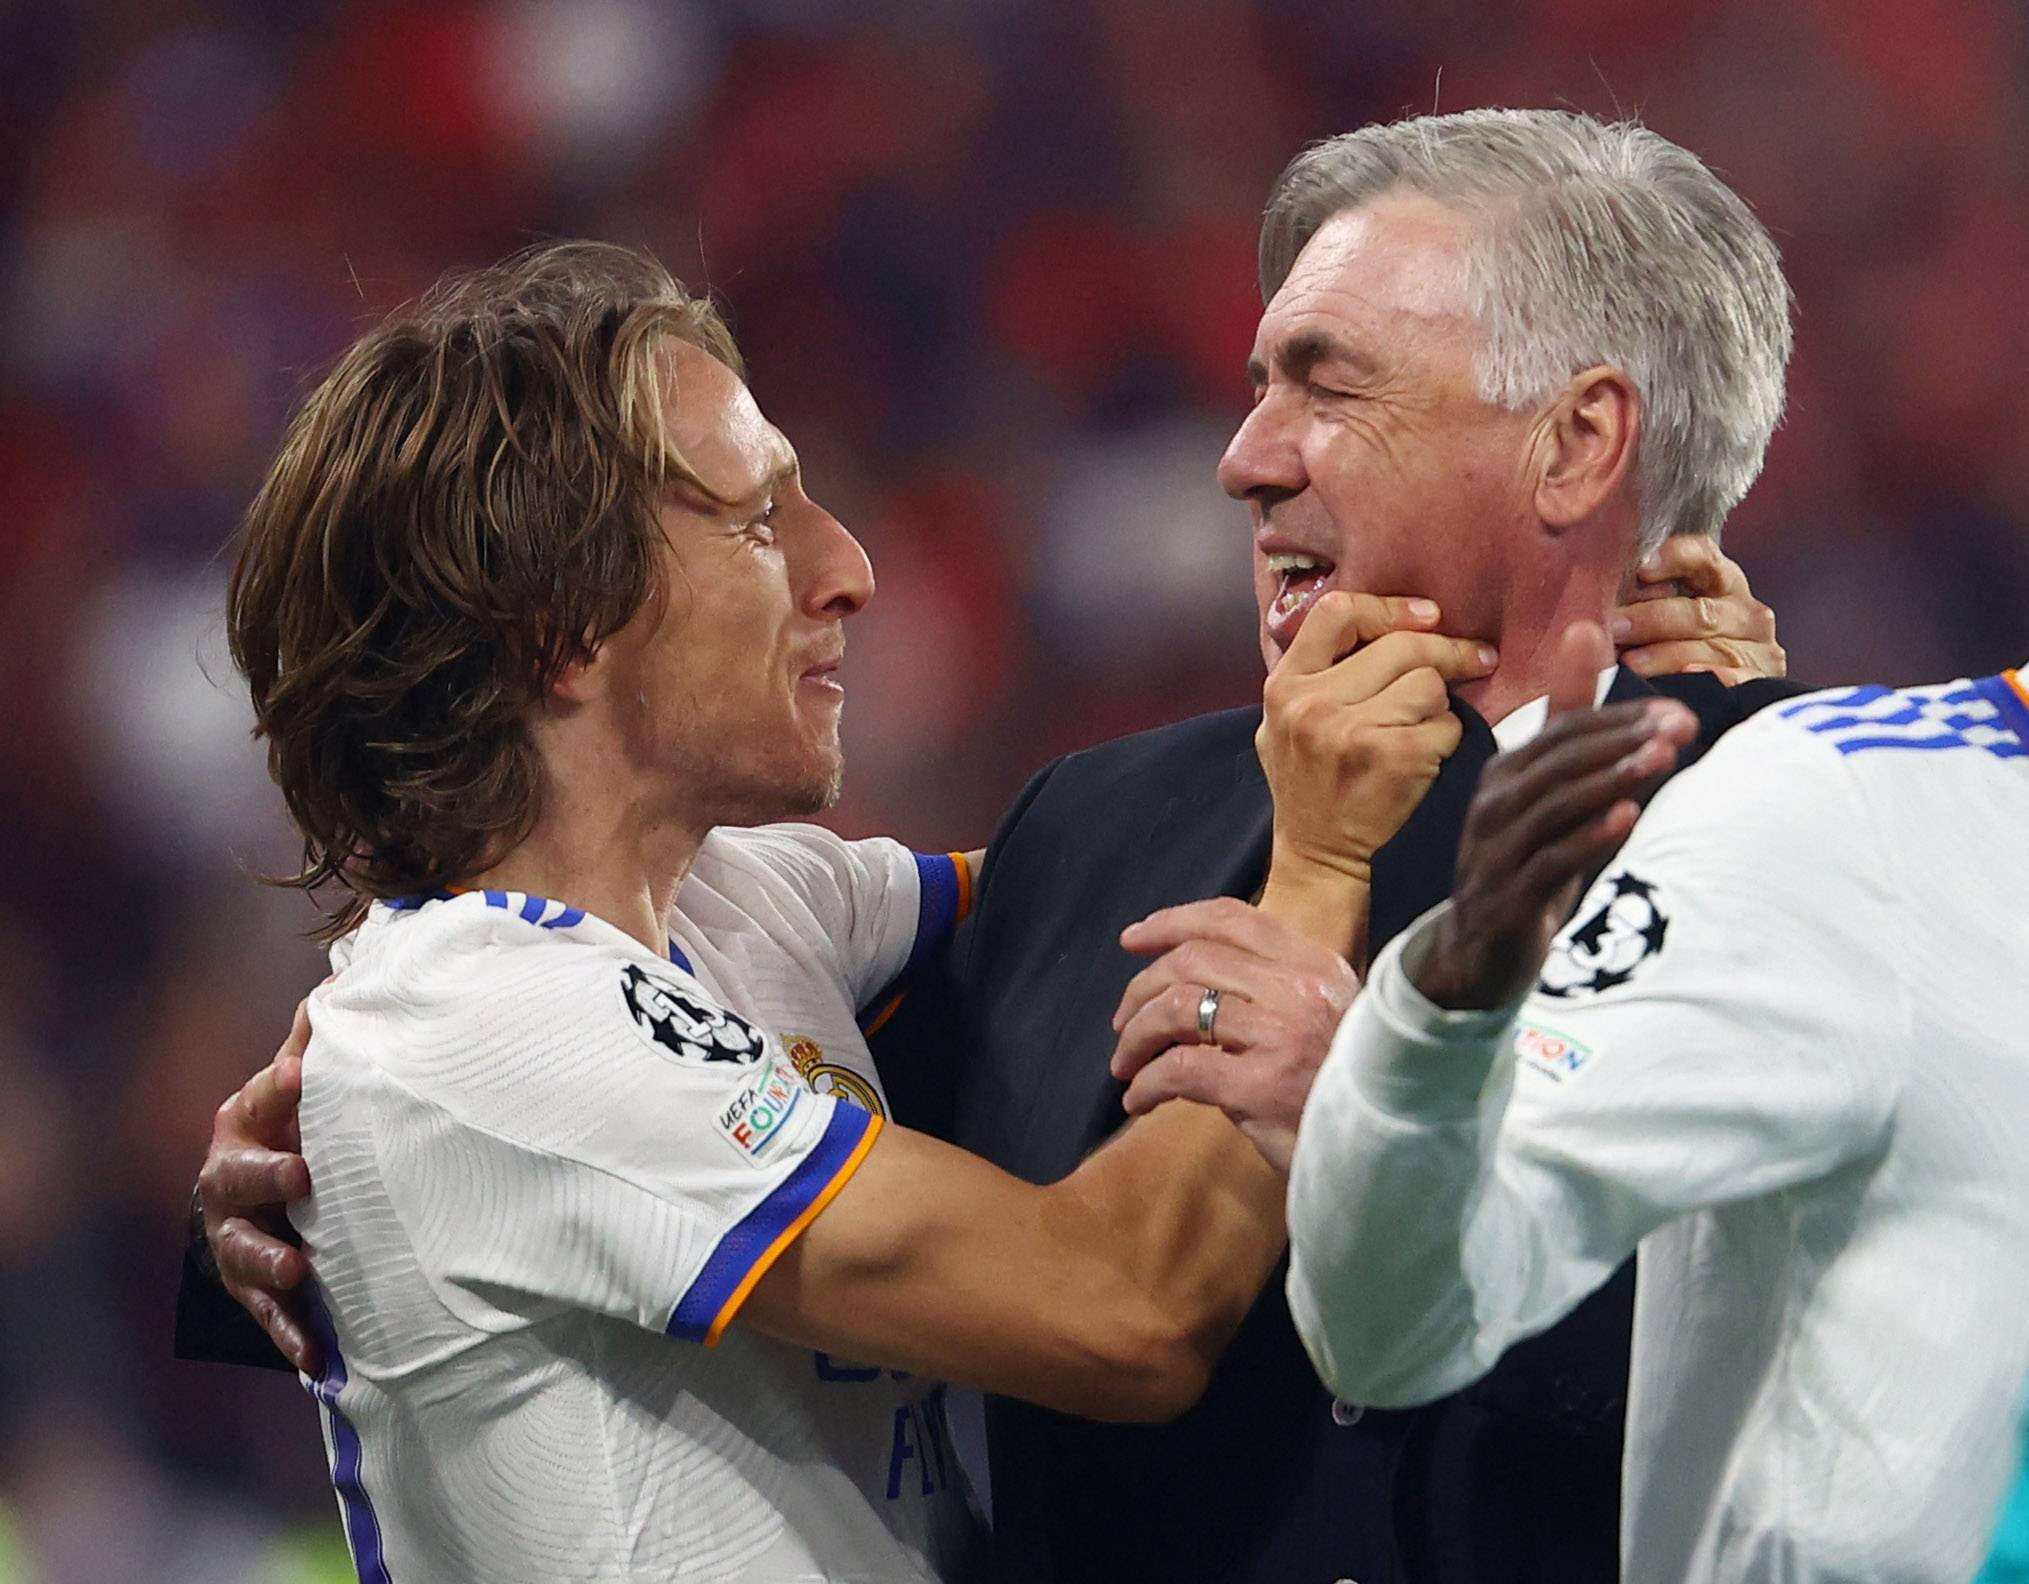 Carlo Ancelotti selected Luka Modric in his dream midfield